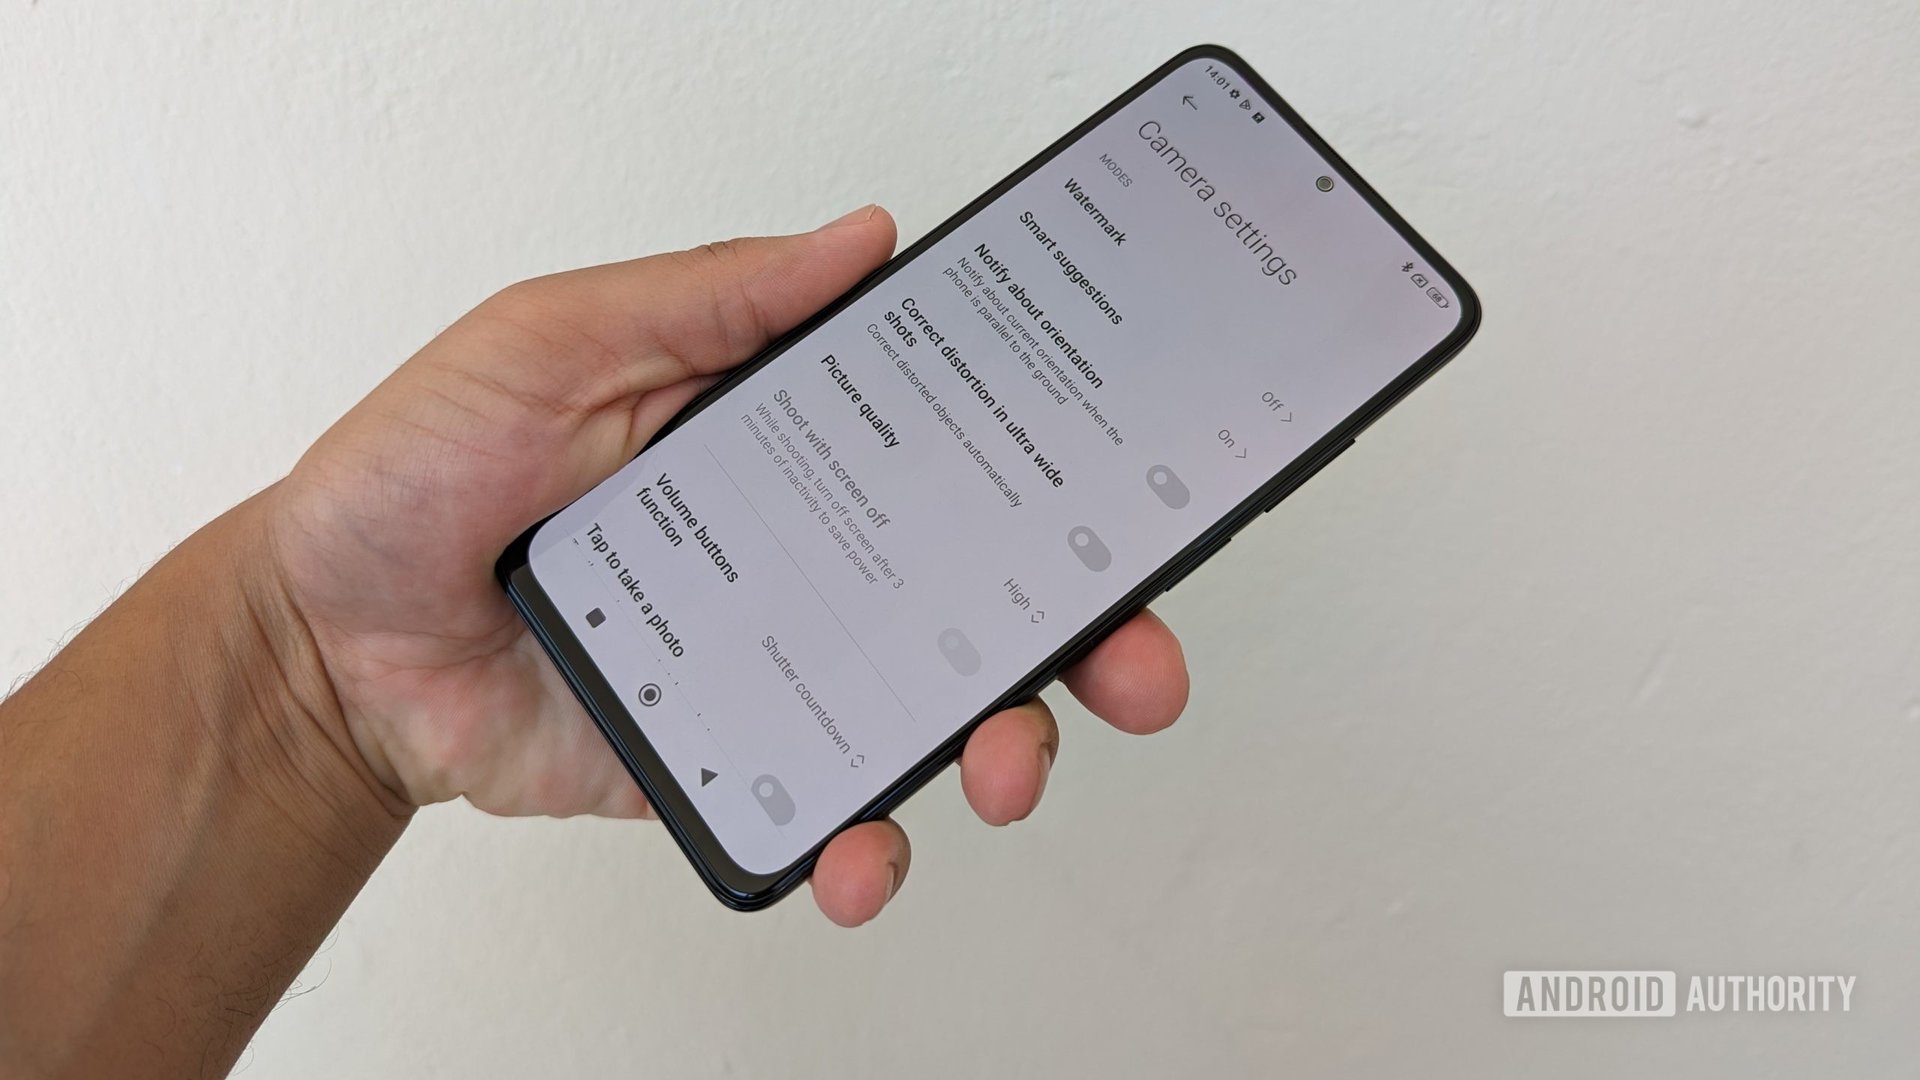 Xiaomi camera app settings menu